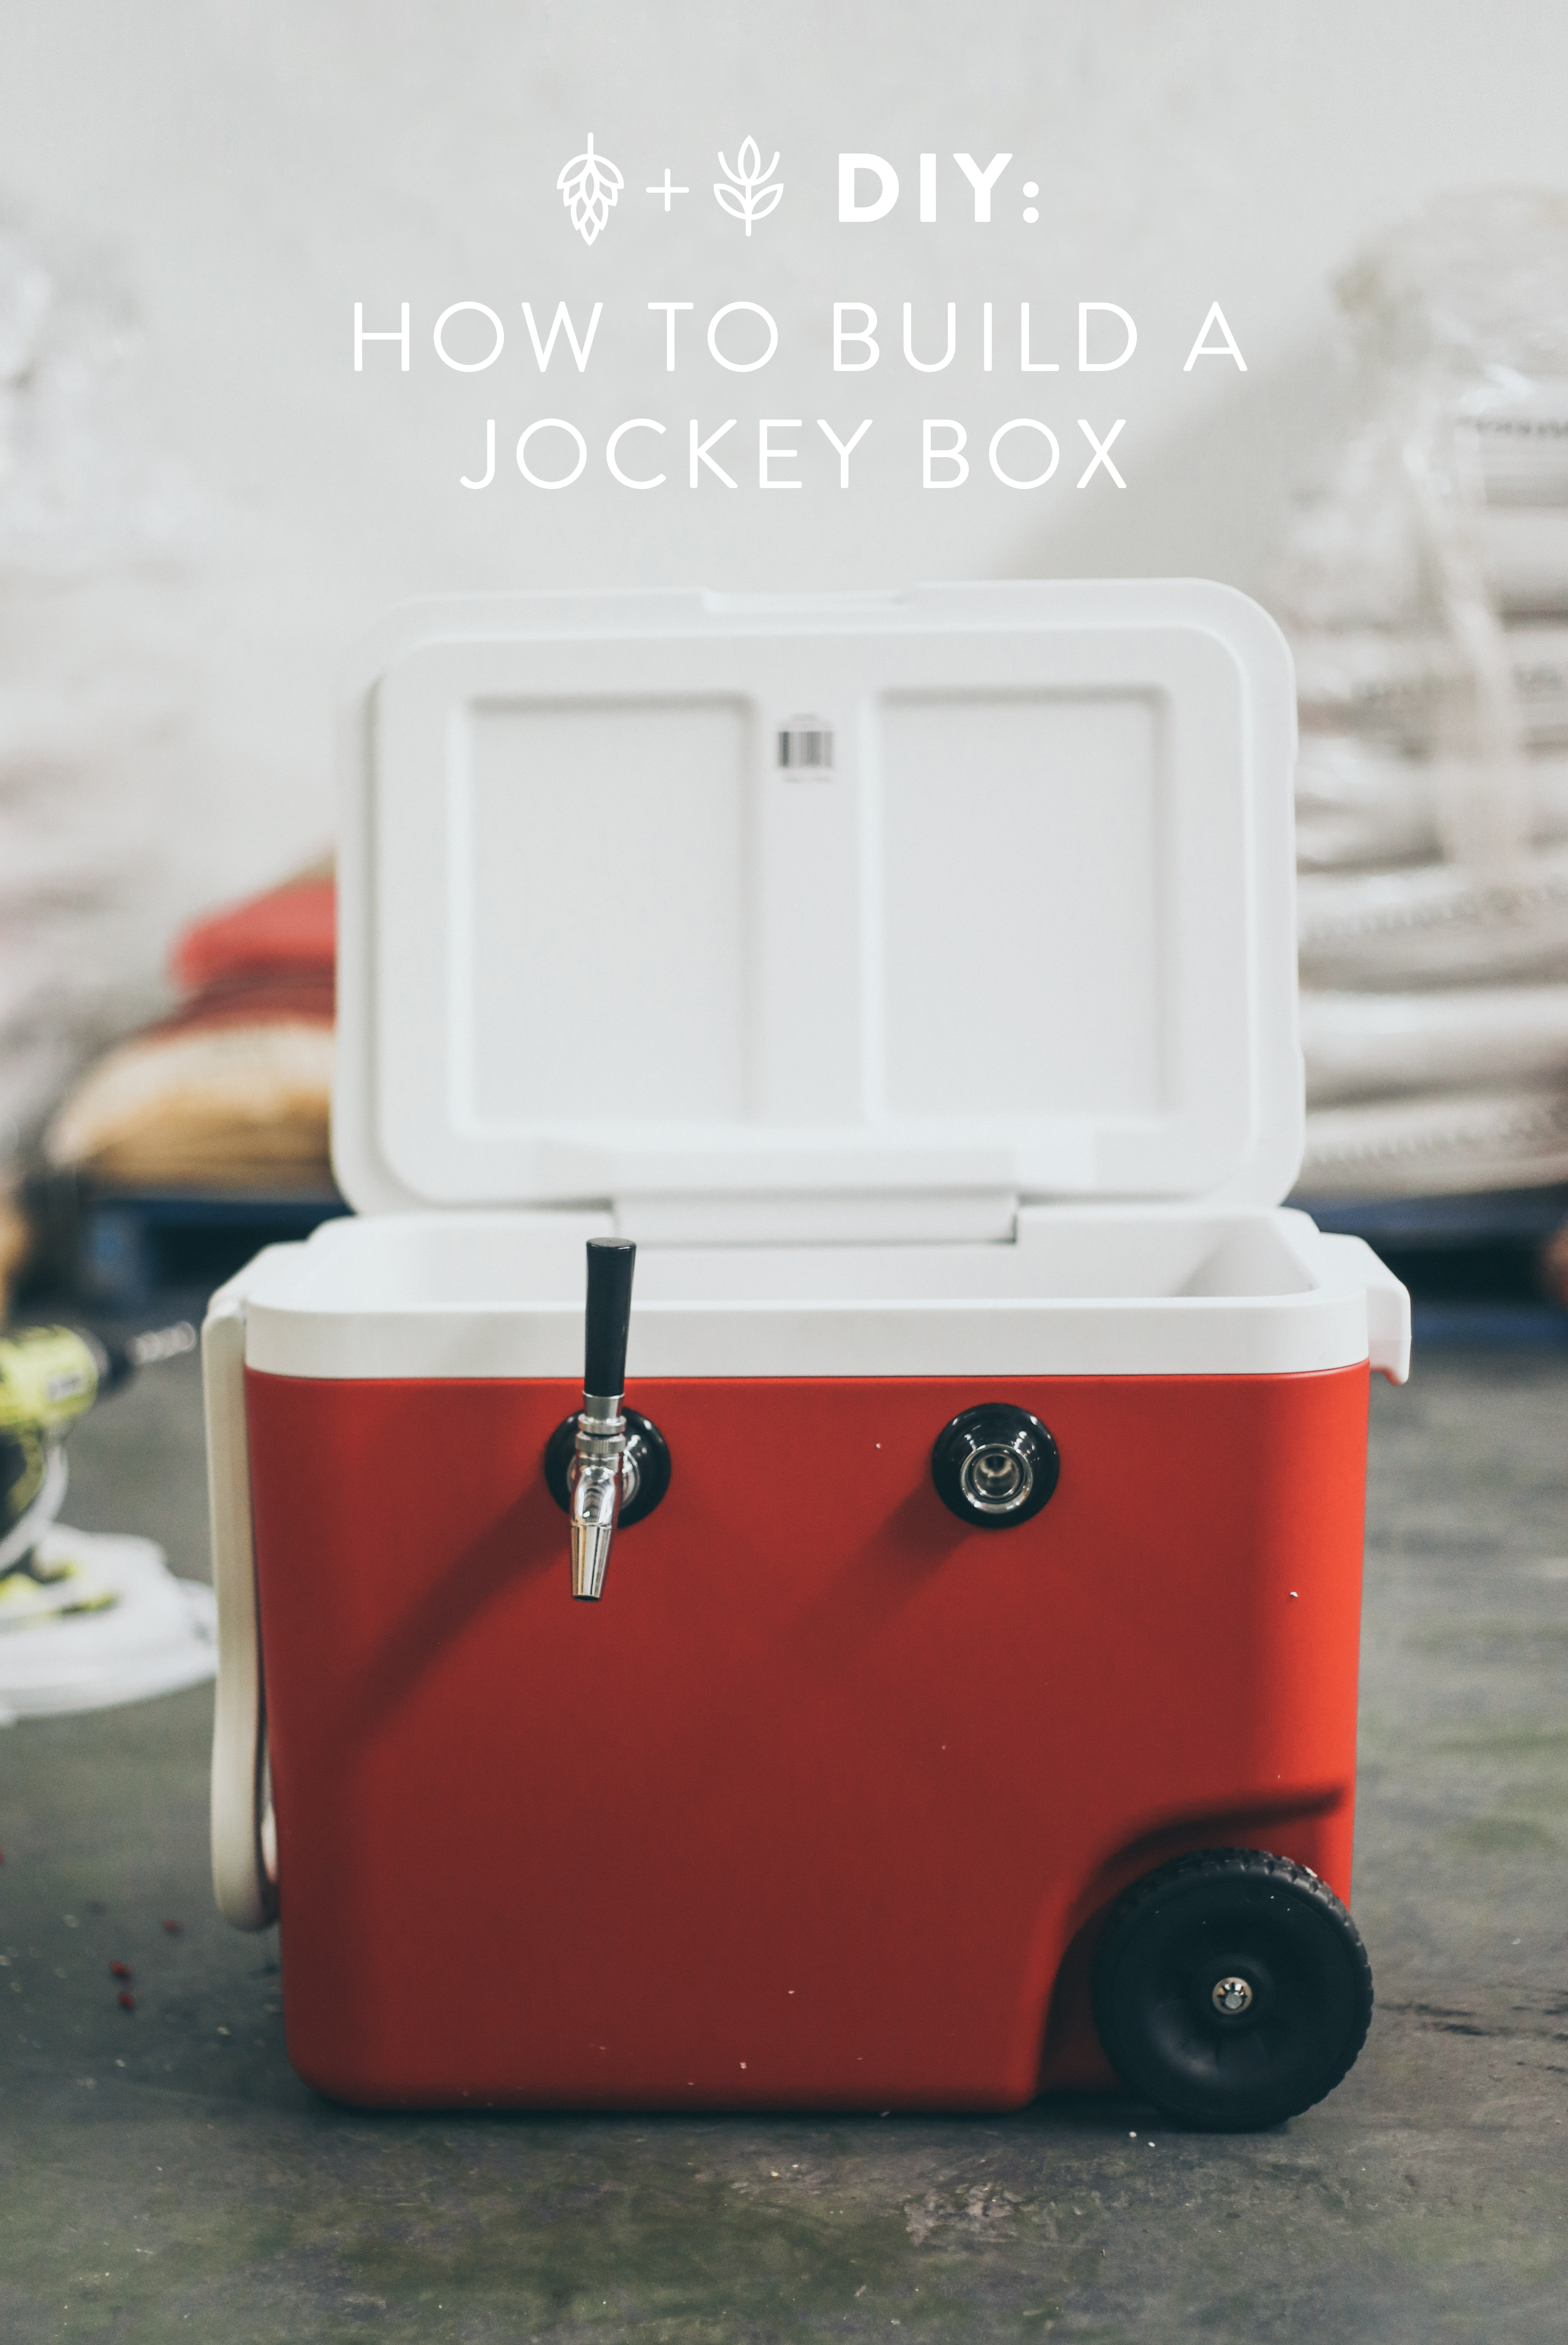 Build a Jockey Box